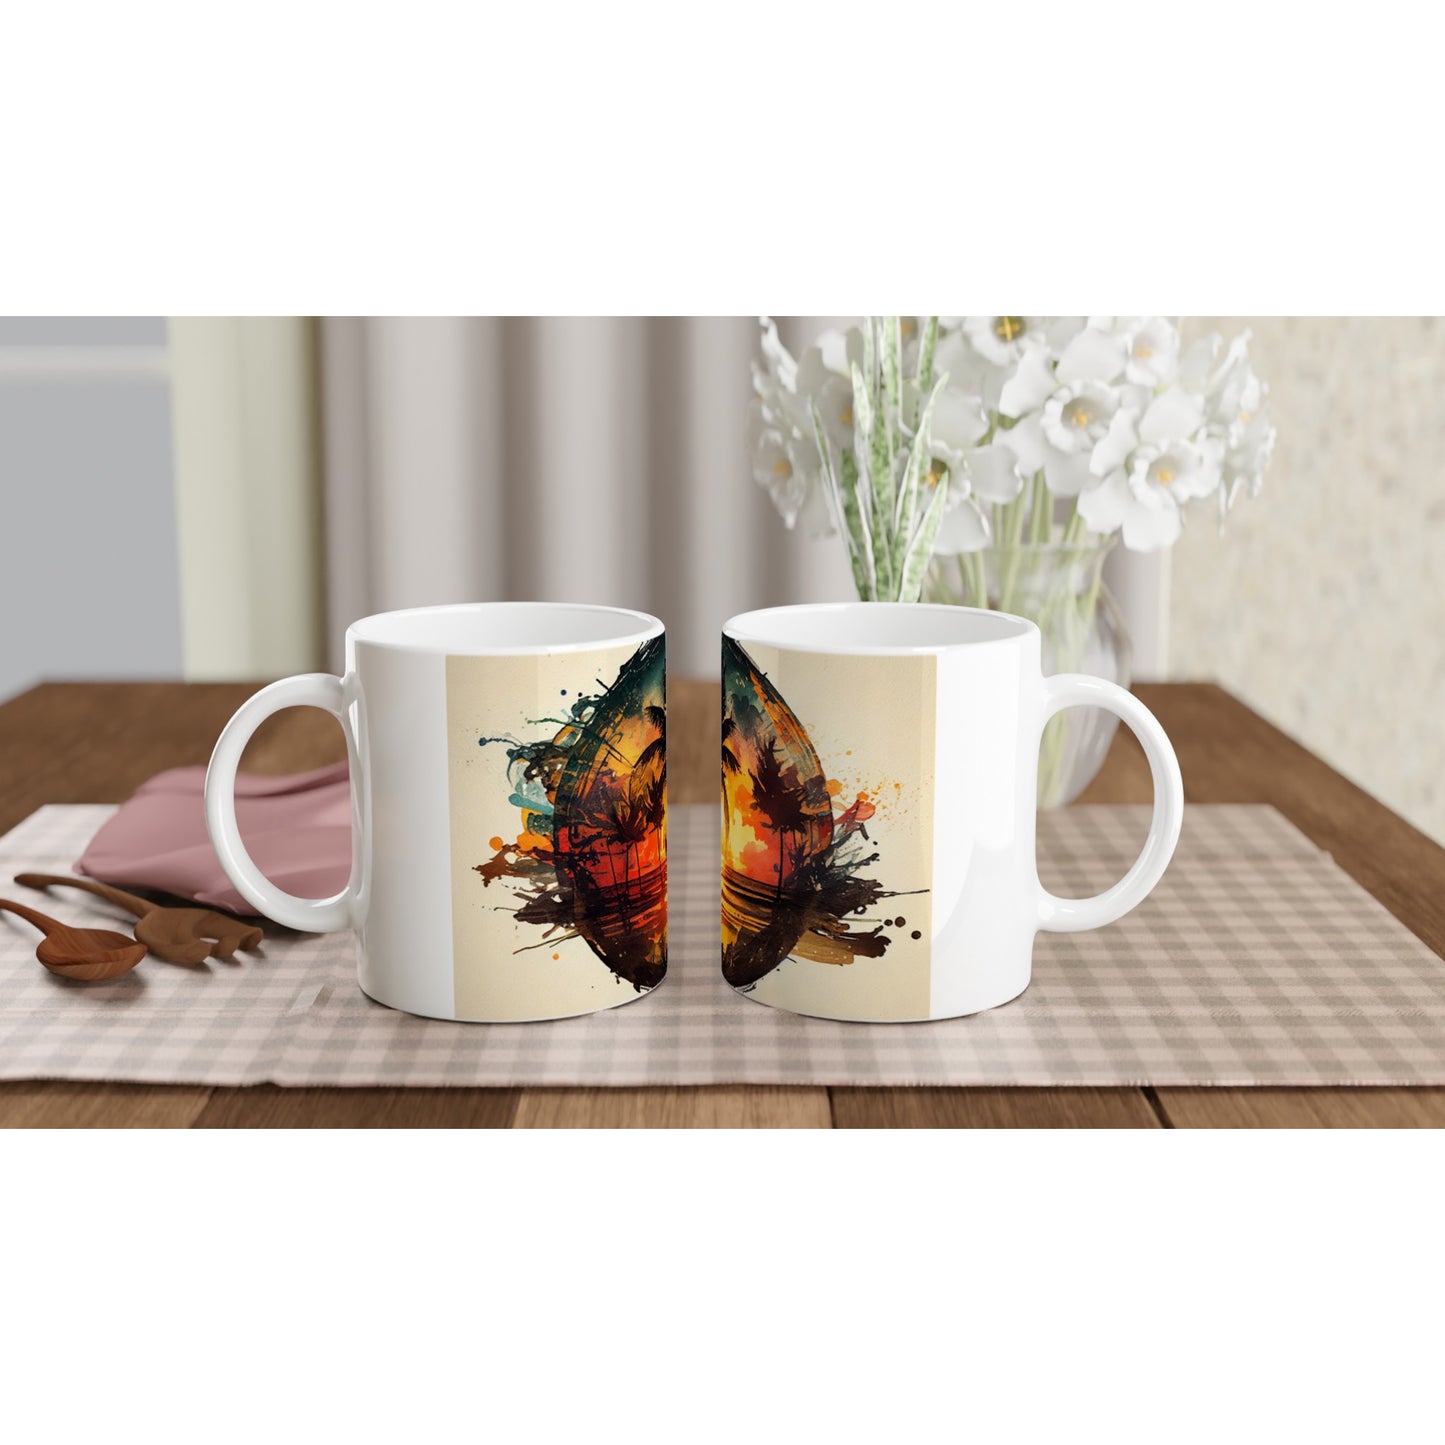 Sunset Spectrum - Ceramic Mug